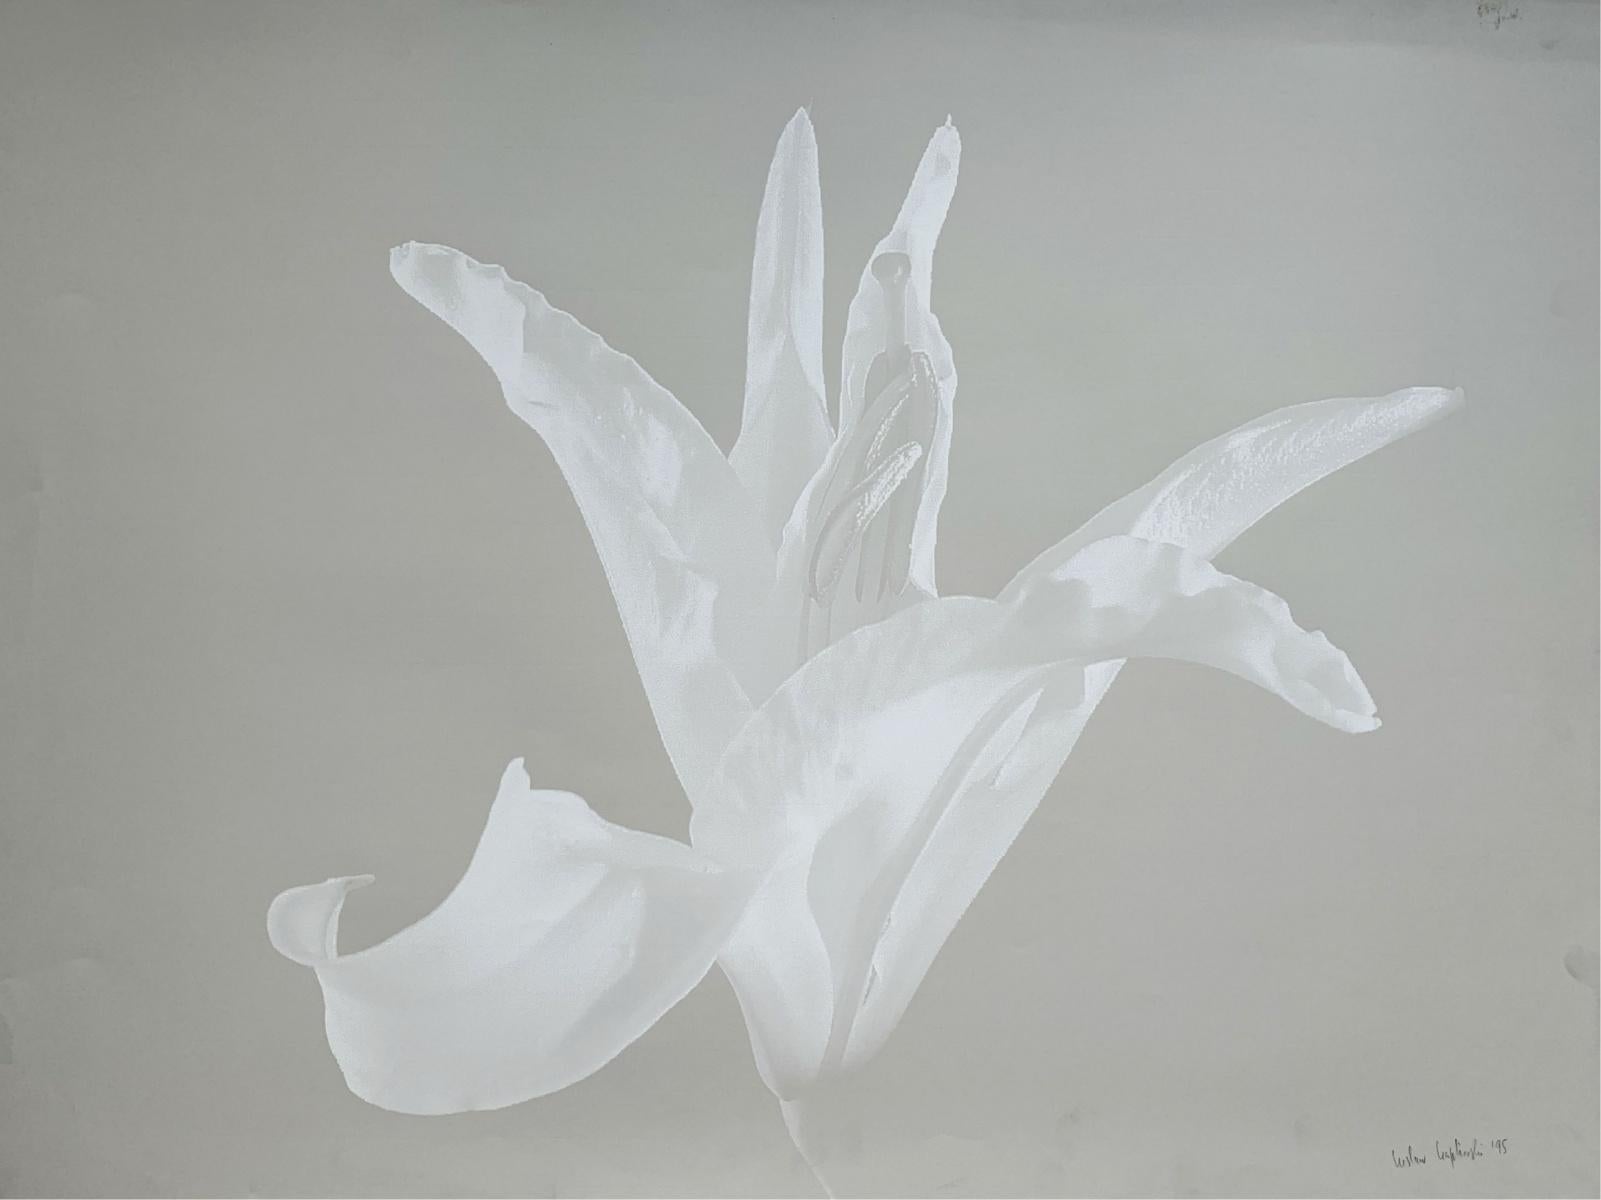 Eine Lilie. Foto auf mattem Papier, Stillleben, Blumenstillleben, Monochrom, Polnischer Künstler